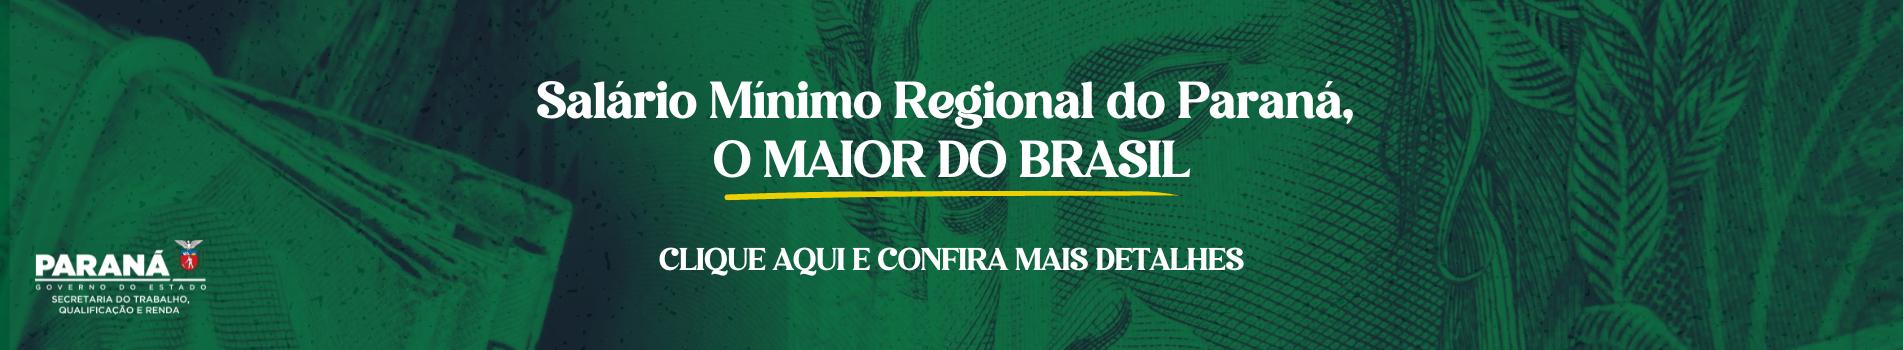 Salário Mínimo Regional do Paraná